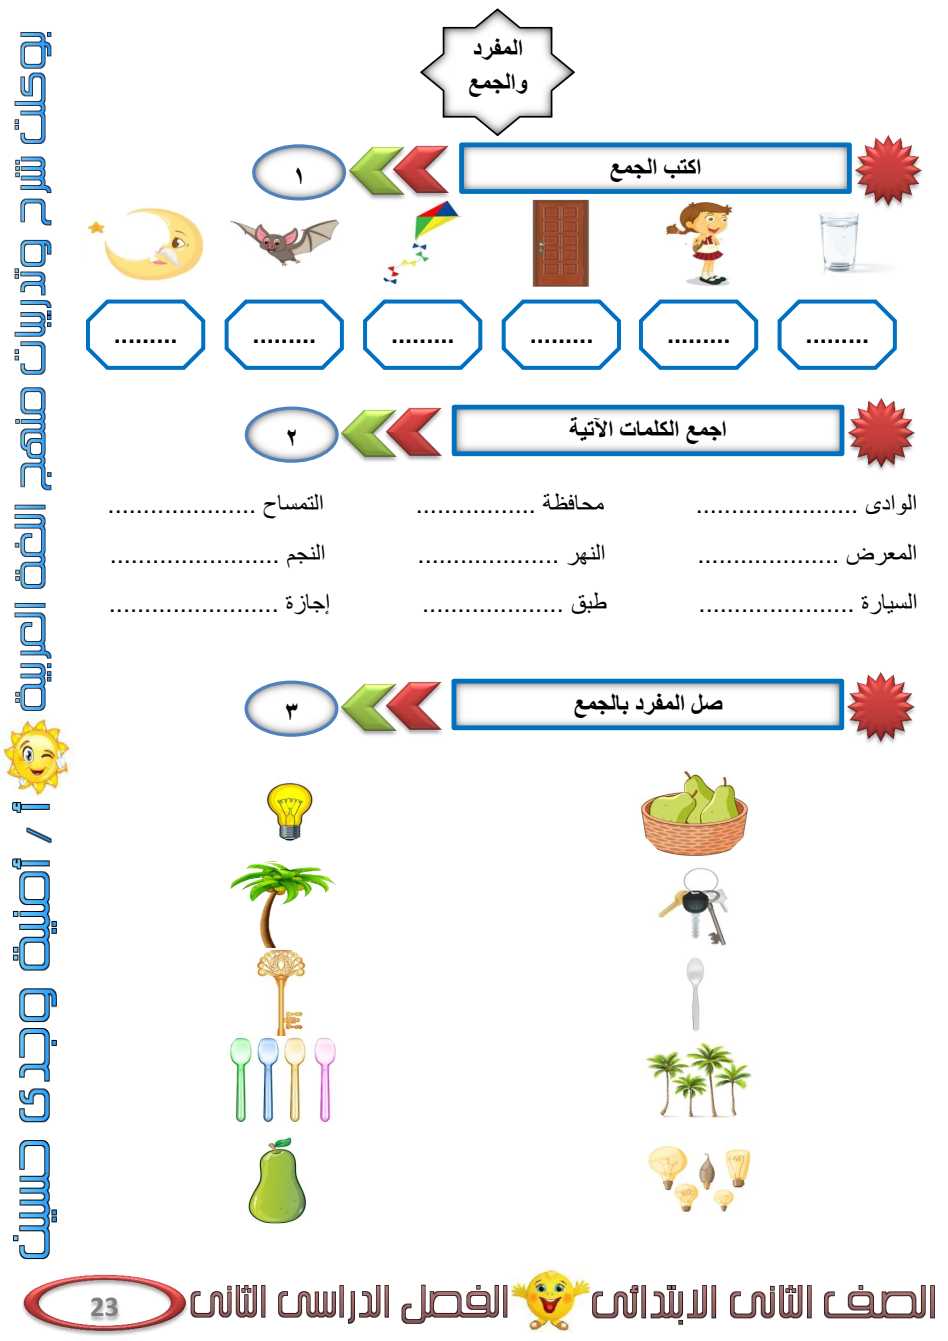 مذكرة لغة عربية للصف الثاني الابتدائي الترم الثاني